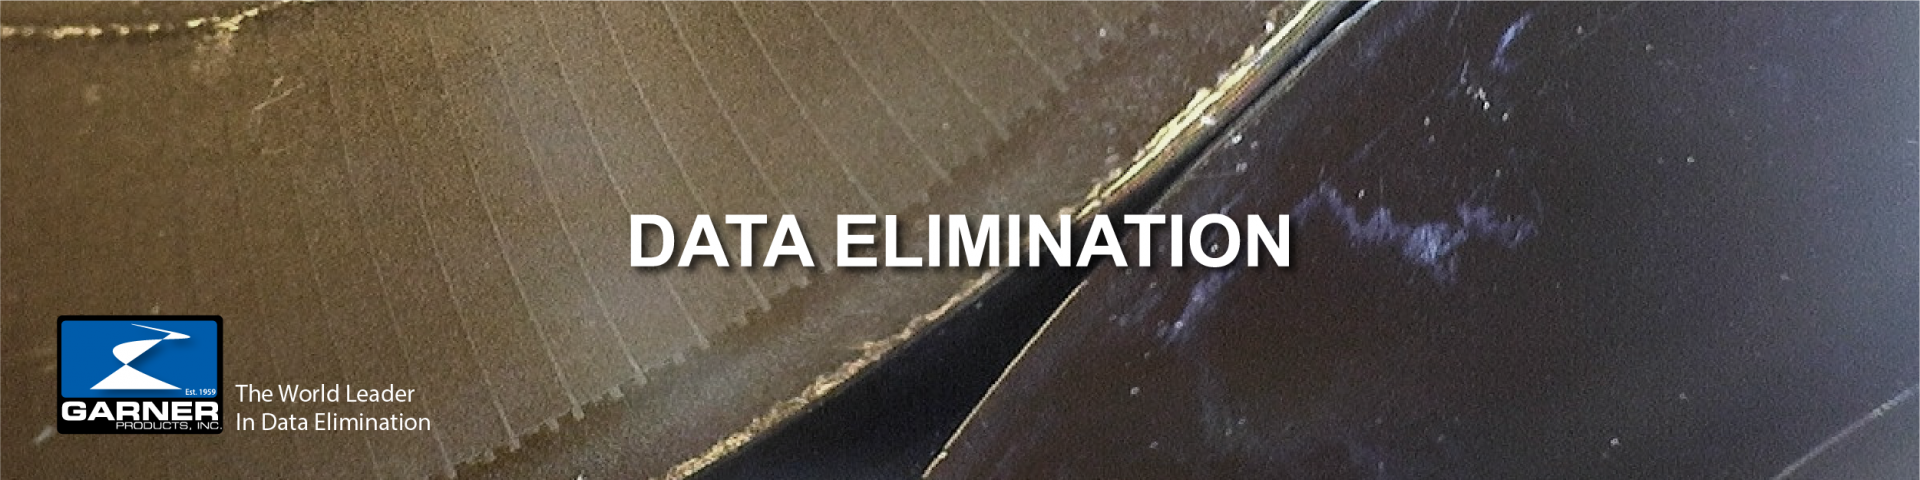 data-elimination-header-1920x480